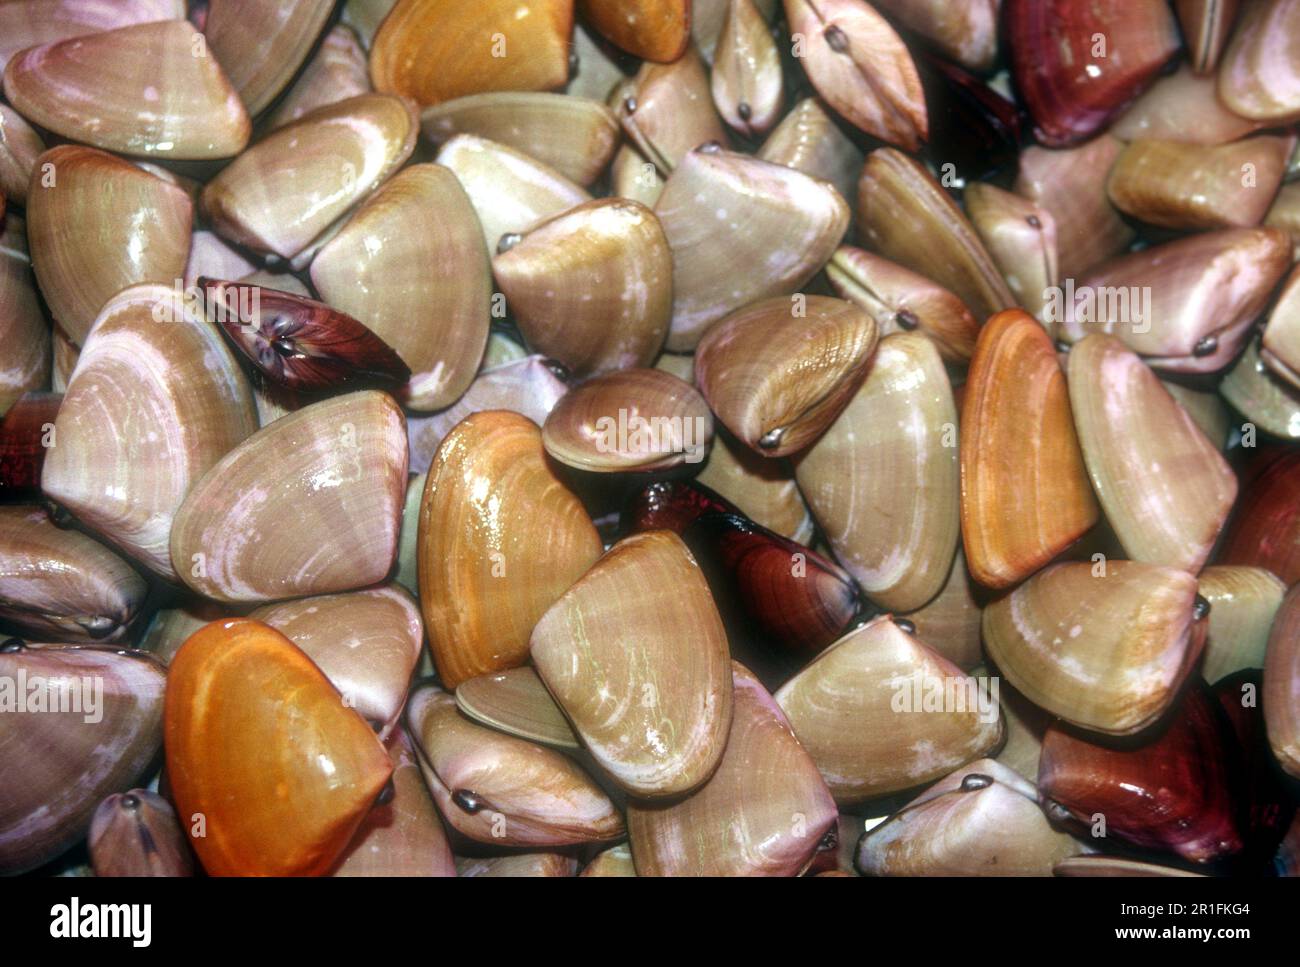 Pipis ( Donax deltoides ) piccole vongole di acqua salata commestibili o molluschi bivalvi marini mangiati in Australia. cibo bush aborigeno. Foto Stock